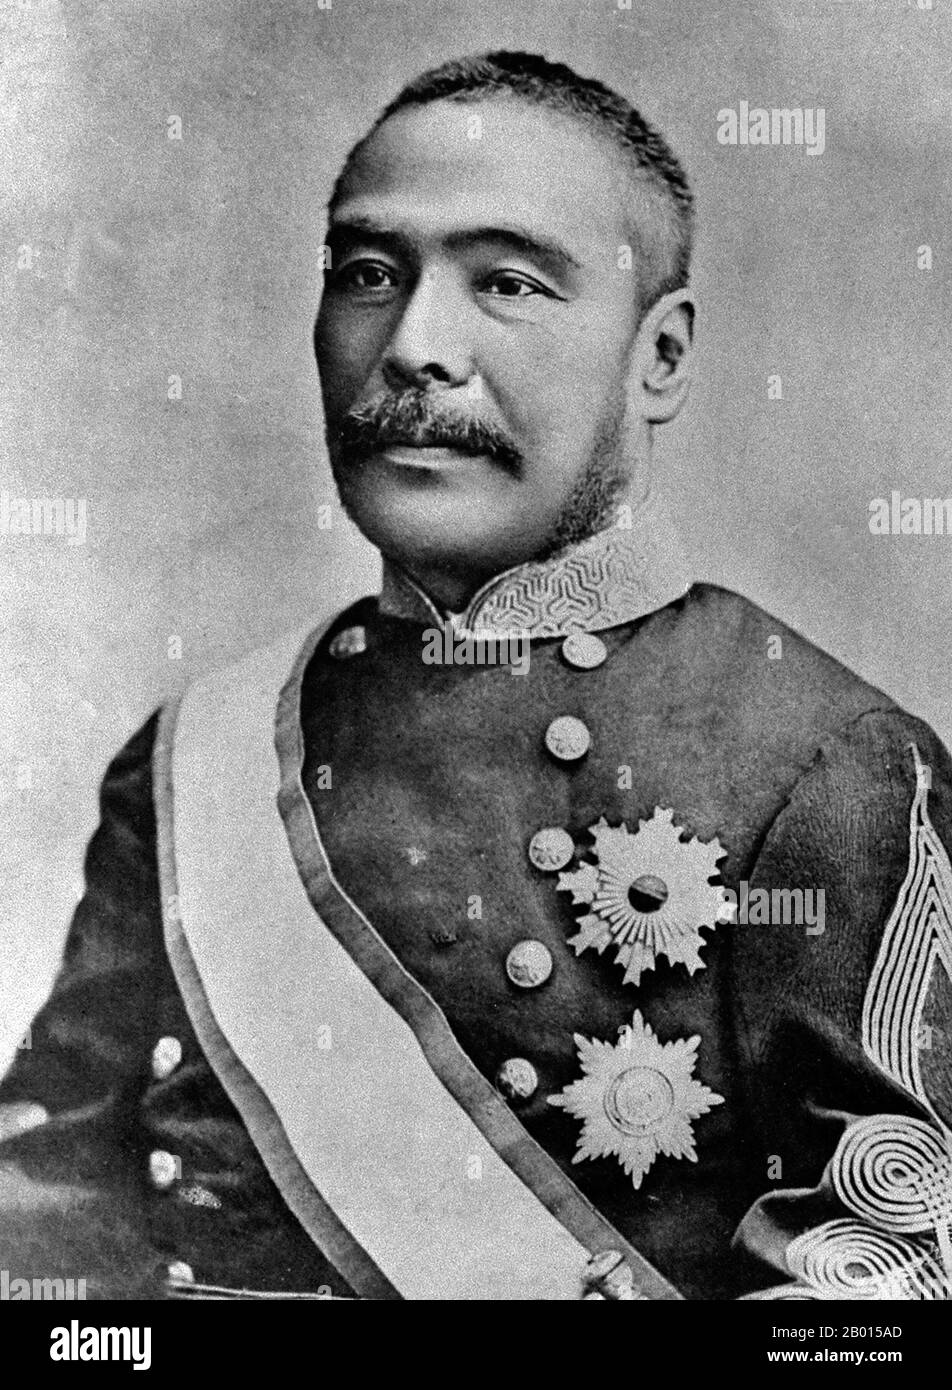 Giappone: Conte Kuroda Kiyotaka (16 ottobre 1840 - 23 agosto 1900), primo Ministro del Giappone (1888-1889). Il conte Kuroda Kiyotaka era un politico giapponese dell'era Meiji, e il secondo primo ministro del Giappone. Nato in una famiglia di samurai, faceva parte della guerra anglo-Satsuma nel 1863. Sotto il nuovo governo Meiji, divenne un pioniere-diplomatico, e fu incaricato degli sforzi di colonizzazione a Hokkaido nel 1872, per contrastare la spinta della Russia verso est. Aiutò a negoziare il trattato Giappone-Corea del 1876, e aiutò nella soppressione della ribellione Satsuma del 1877. Foto Stock